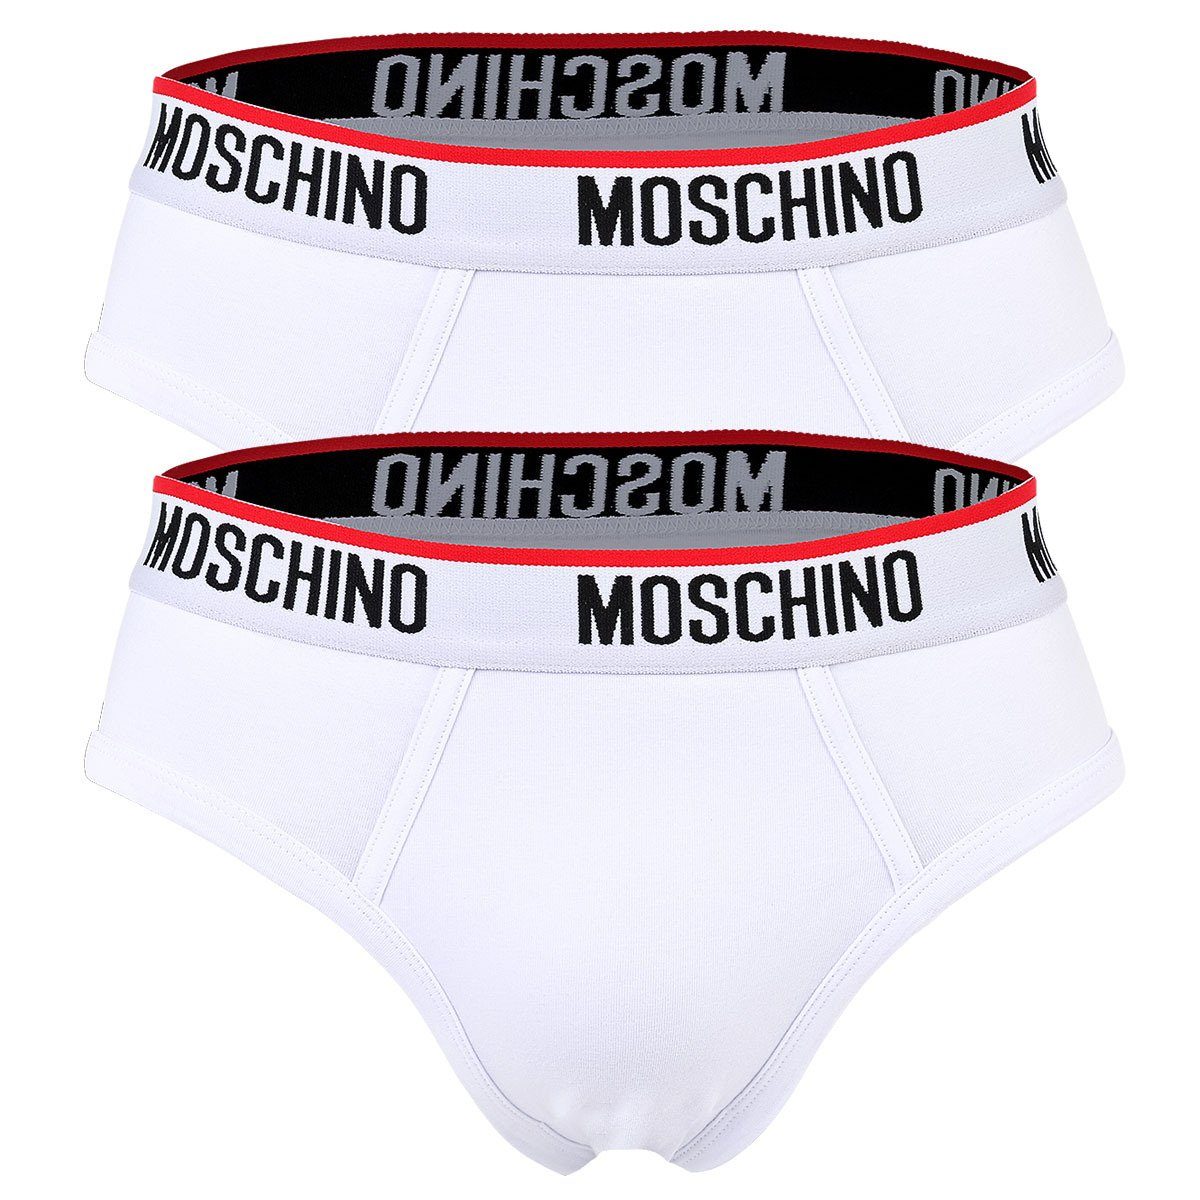 Moschino Slip Herren Slips 2er Pack - Briefs, Unterhose, Cotton Weiß